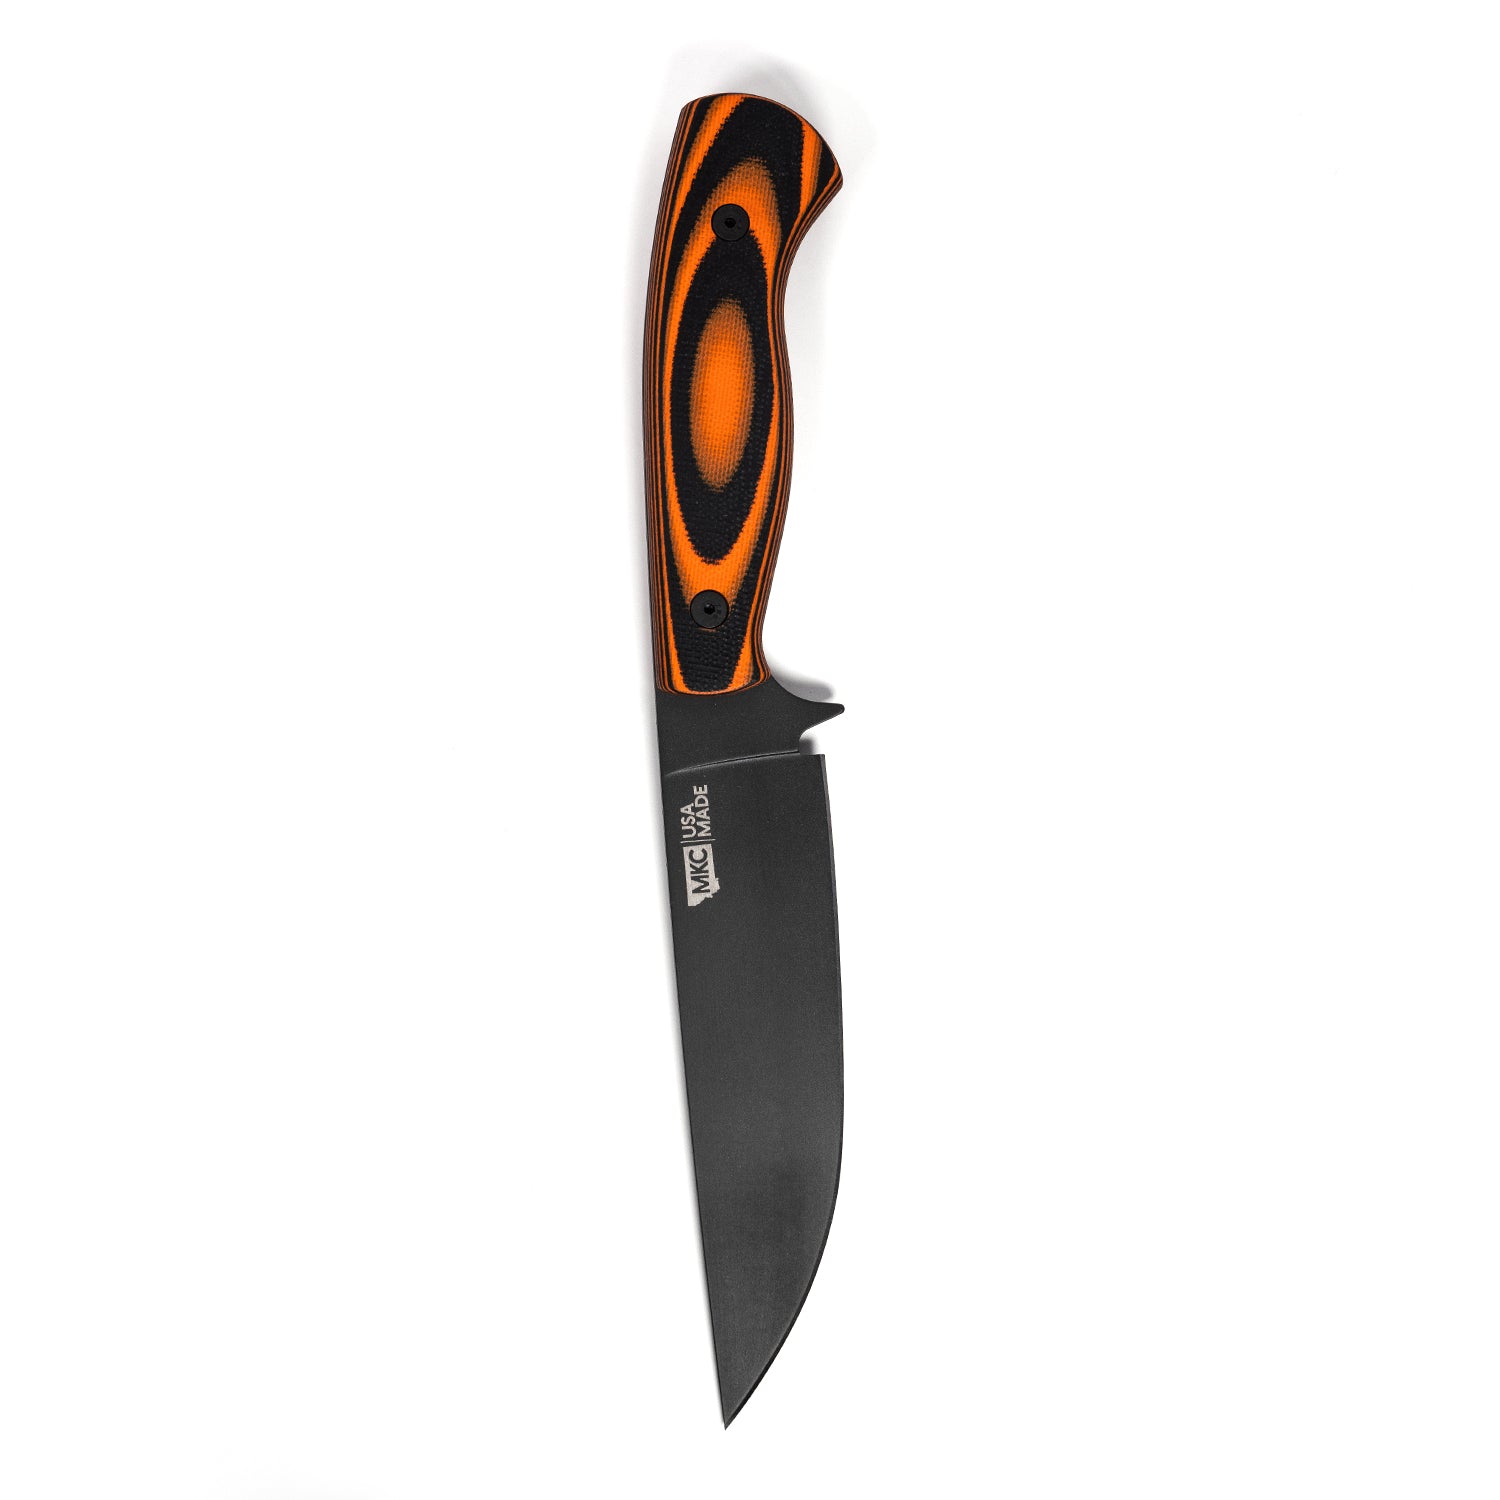 Cutco Knives Drop Point Hunter - KLC10499 - The Cutting Edge